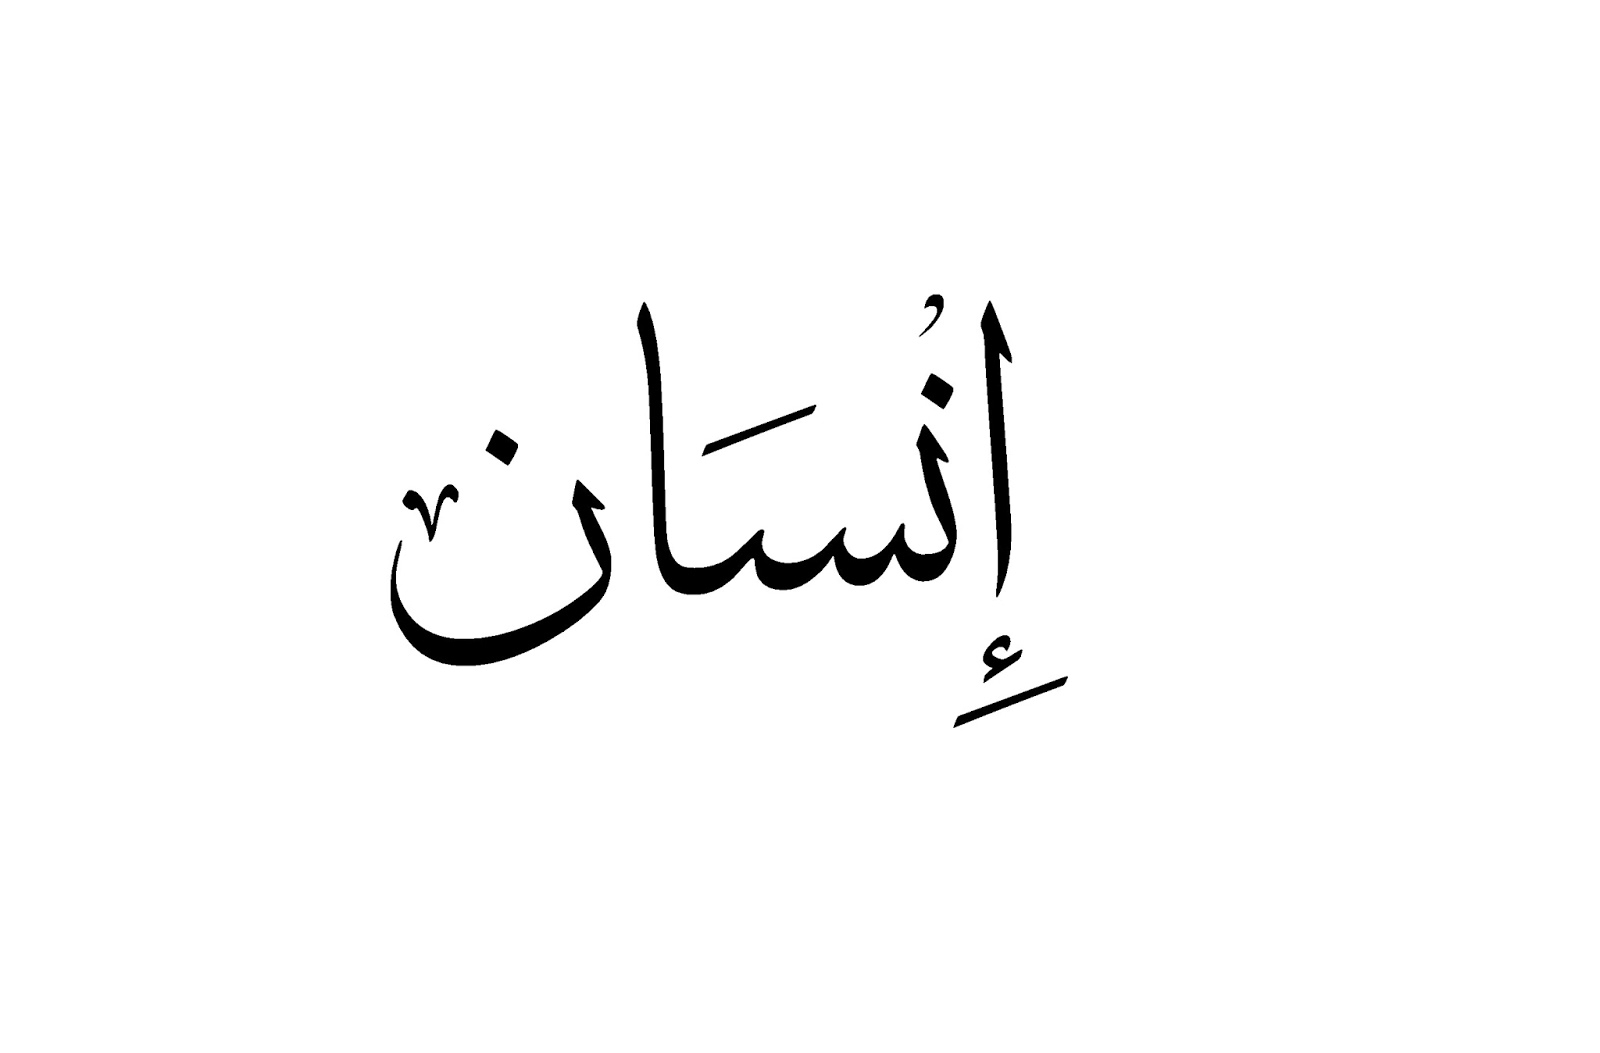 Душа на арабском языке. Арабские надписи. Надписи на арабском языке. Надпись по арабски. Арабские иероглифы.